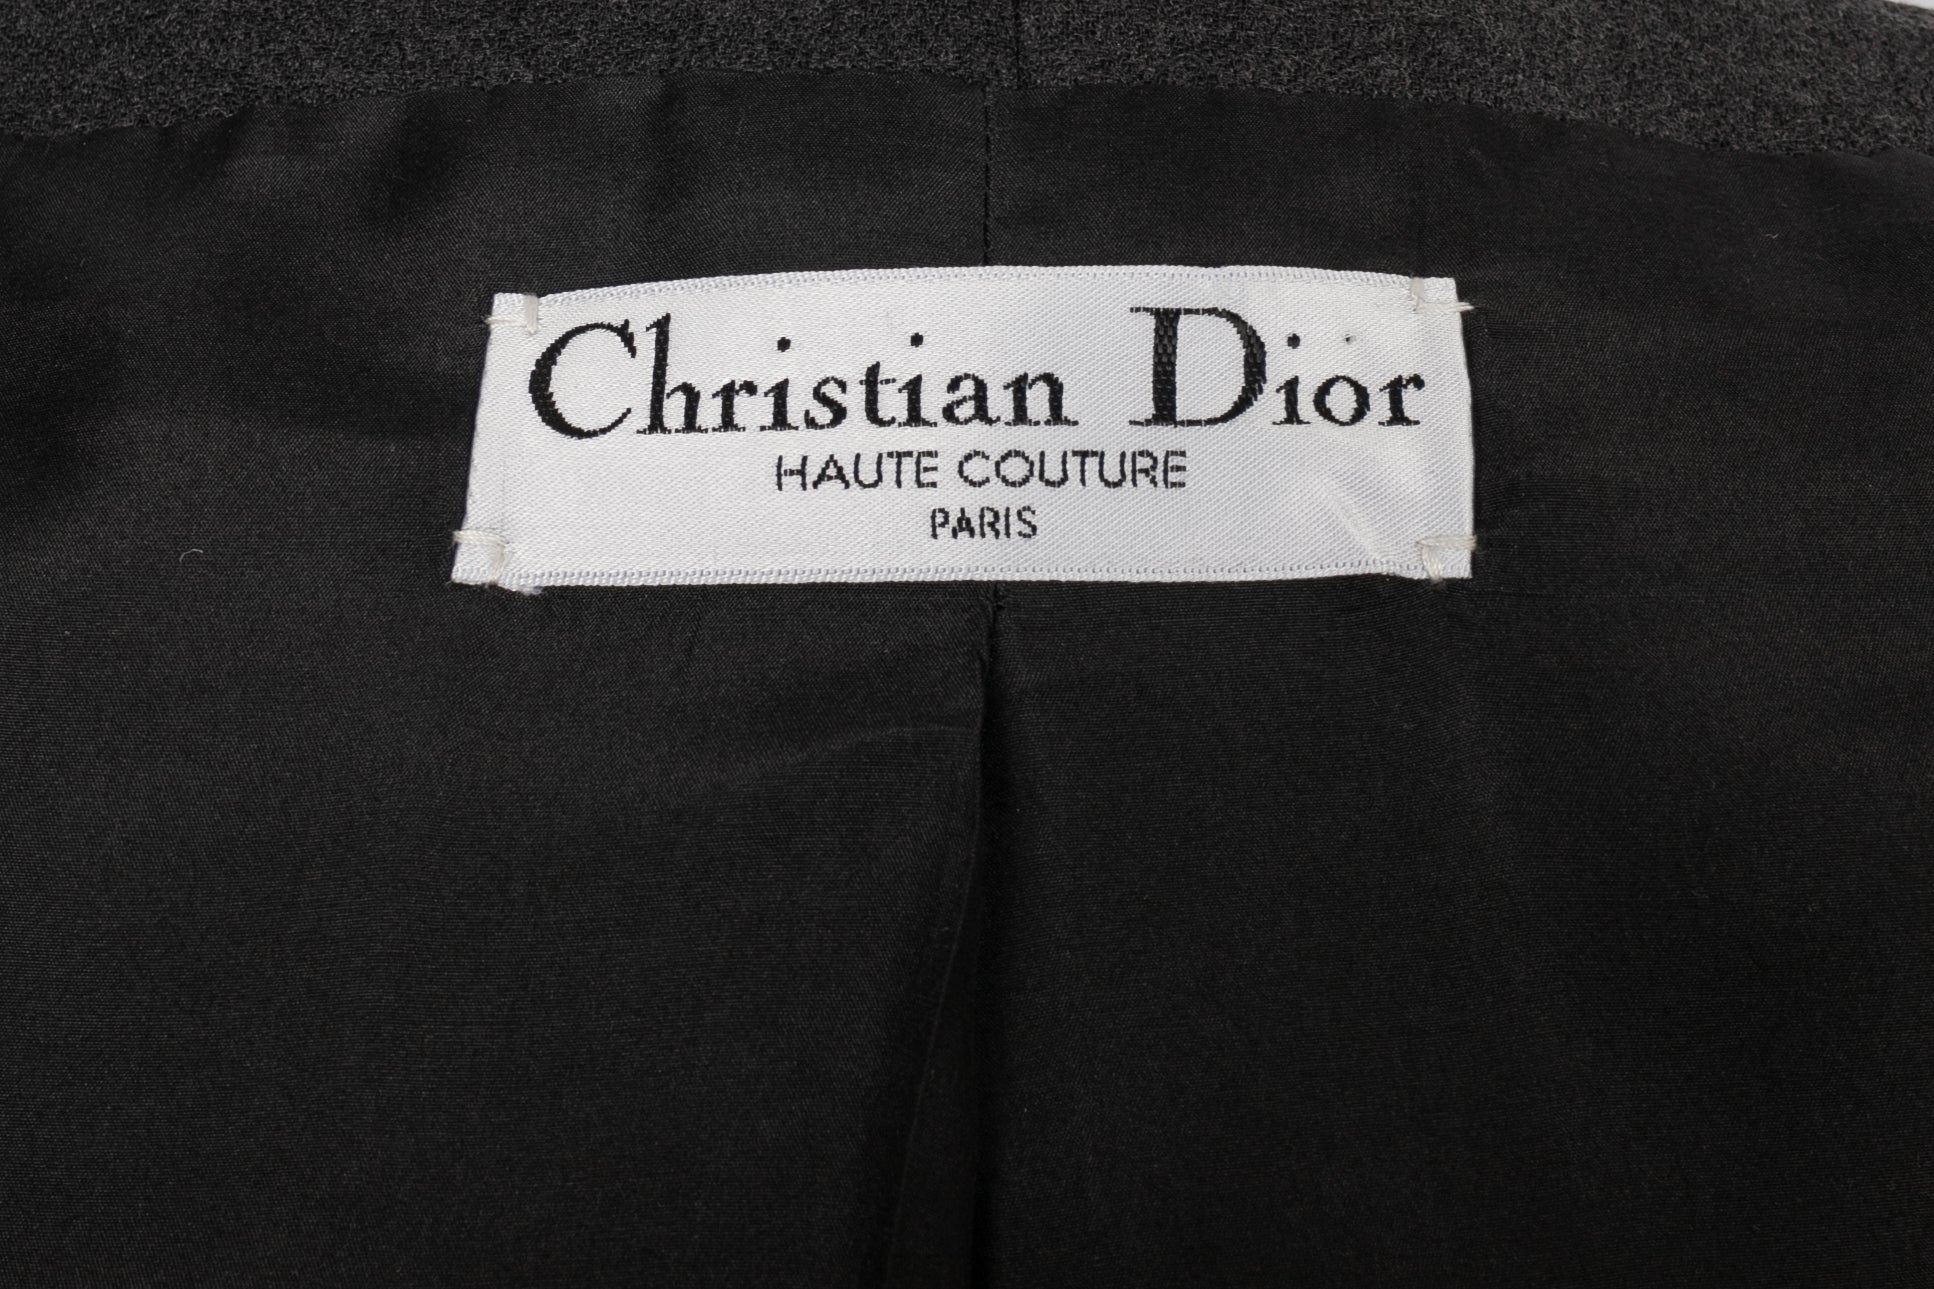 Ensemble Christian Dior Haute Couture 